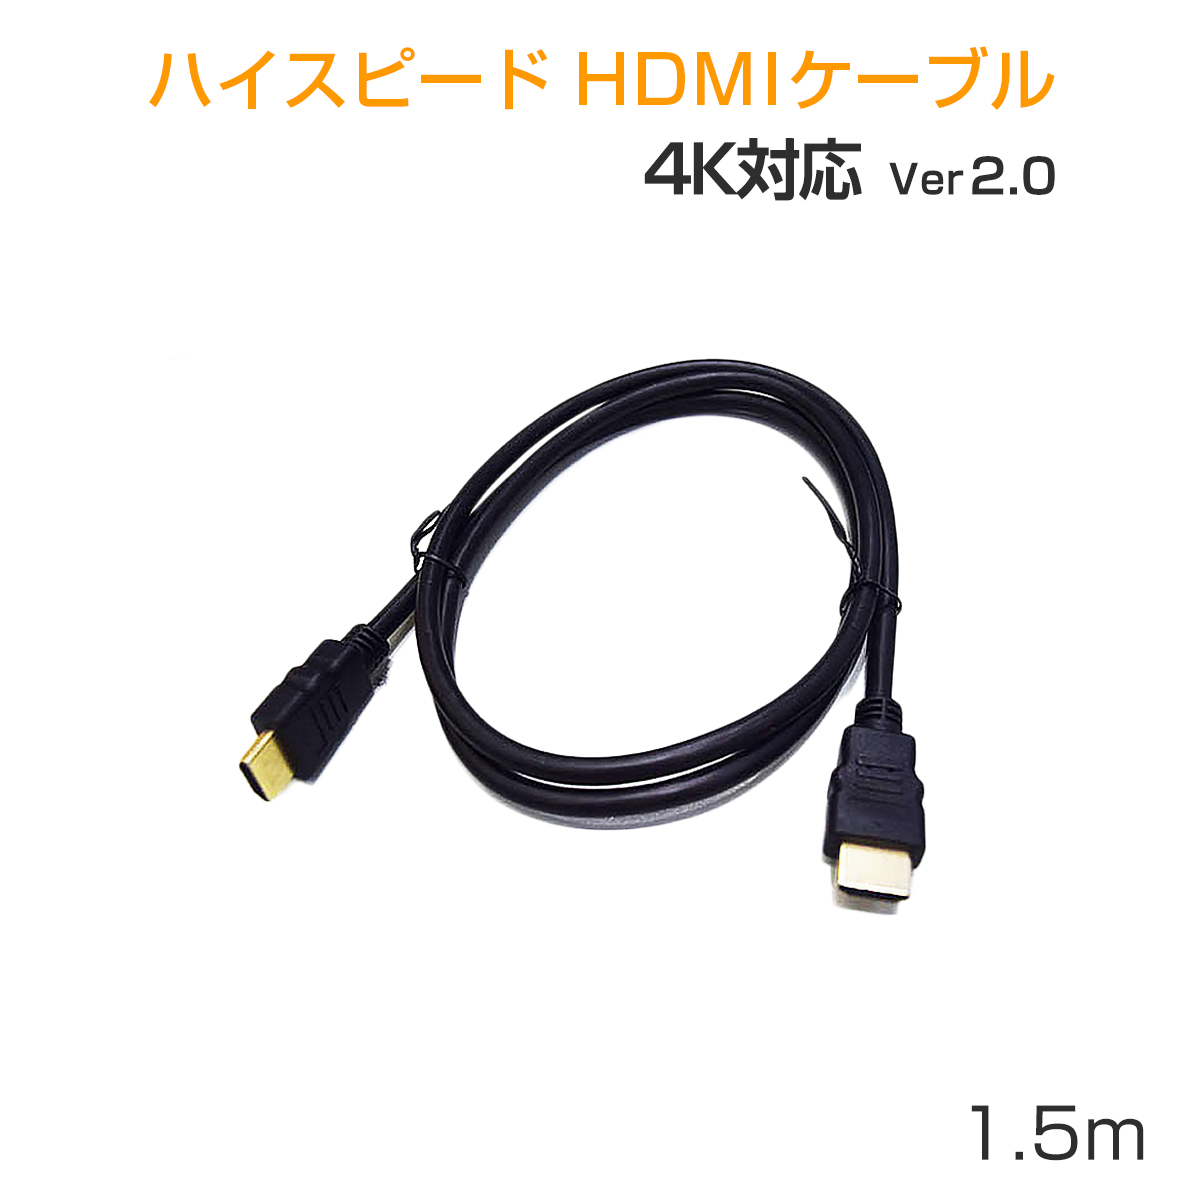 卸売B2B HDMIケーブル ハイスピード Ver2.0 4K/60p UltraHD HDR 3D FHD HEC ARC 1.5m タイプAオス-タイプAオス 黒 SDM便送料無料 1ヶ月保証 K&M